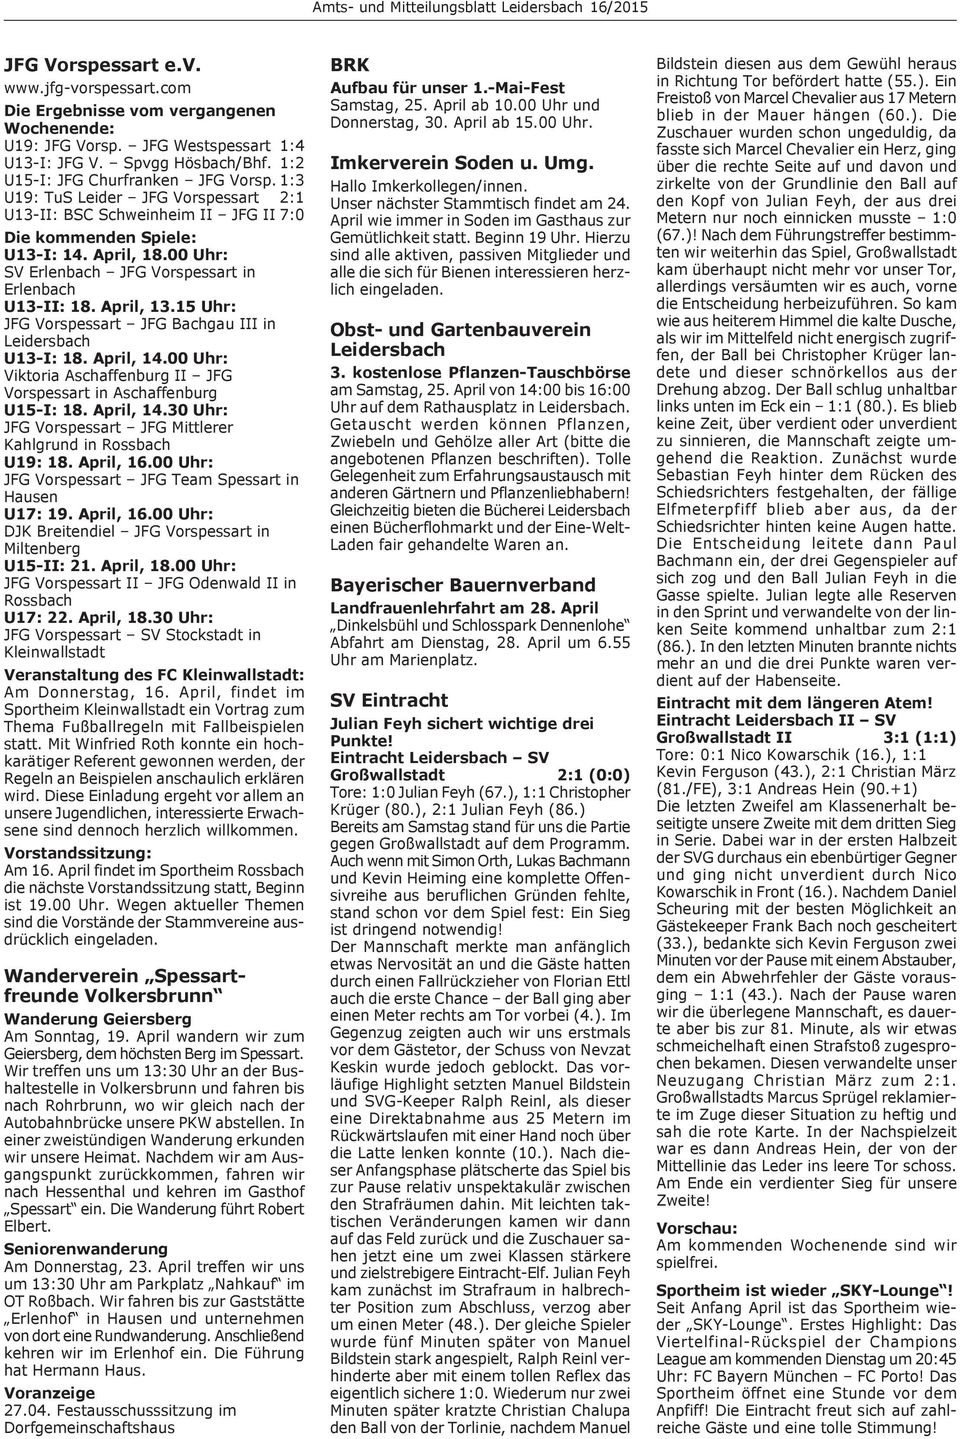 15 Uhr: JFG Vorspessart JFG Bachgau III in Leidersbach U13-I: 18. April, 14.00 Uhr: Viktoria Aschaffenburg II JFG Vorspessart in Aschaffenburg U15-I: 18. April, 14.30 Uhr: JFG Vorspessart JFG Mittlerer Kahlgrund in Rossbach U19: 18.